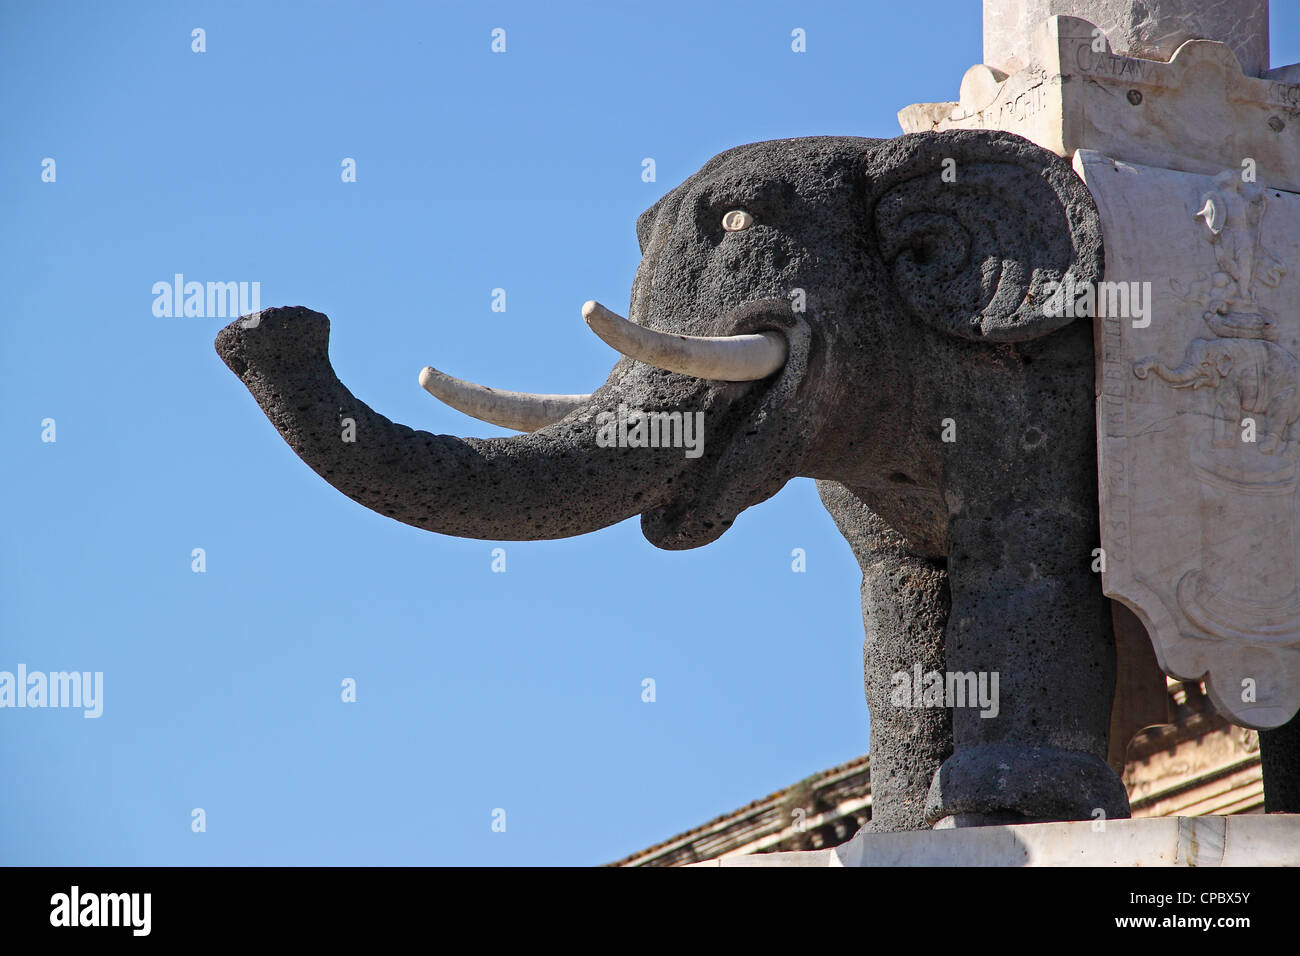 Statue de l'éléphant, construit en pierre de lave, symbole de Catane, Sicile, Italie Banque D'Images